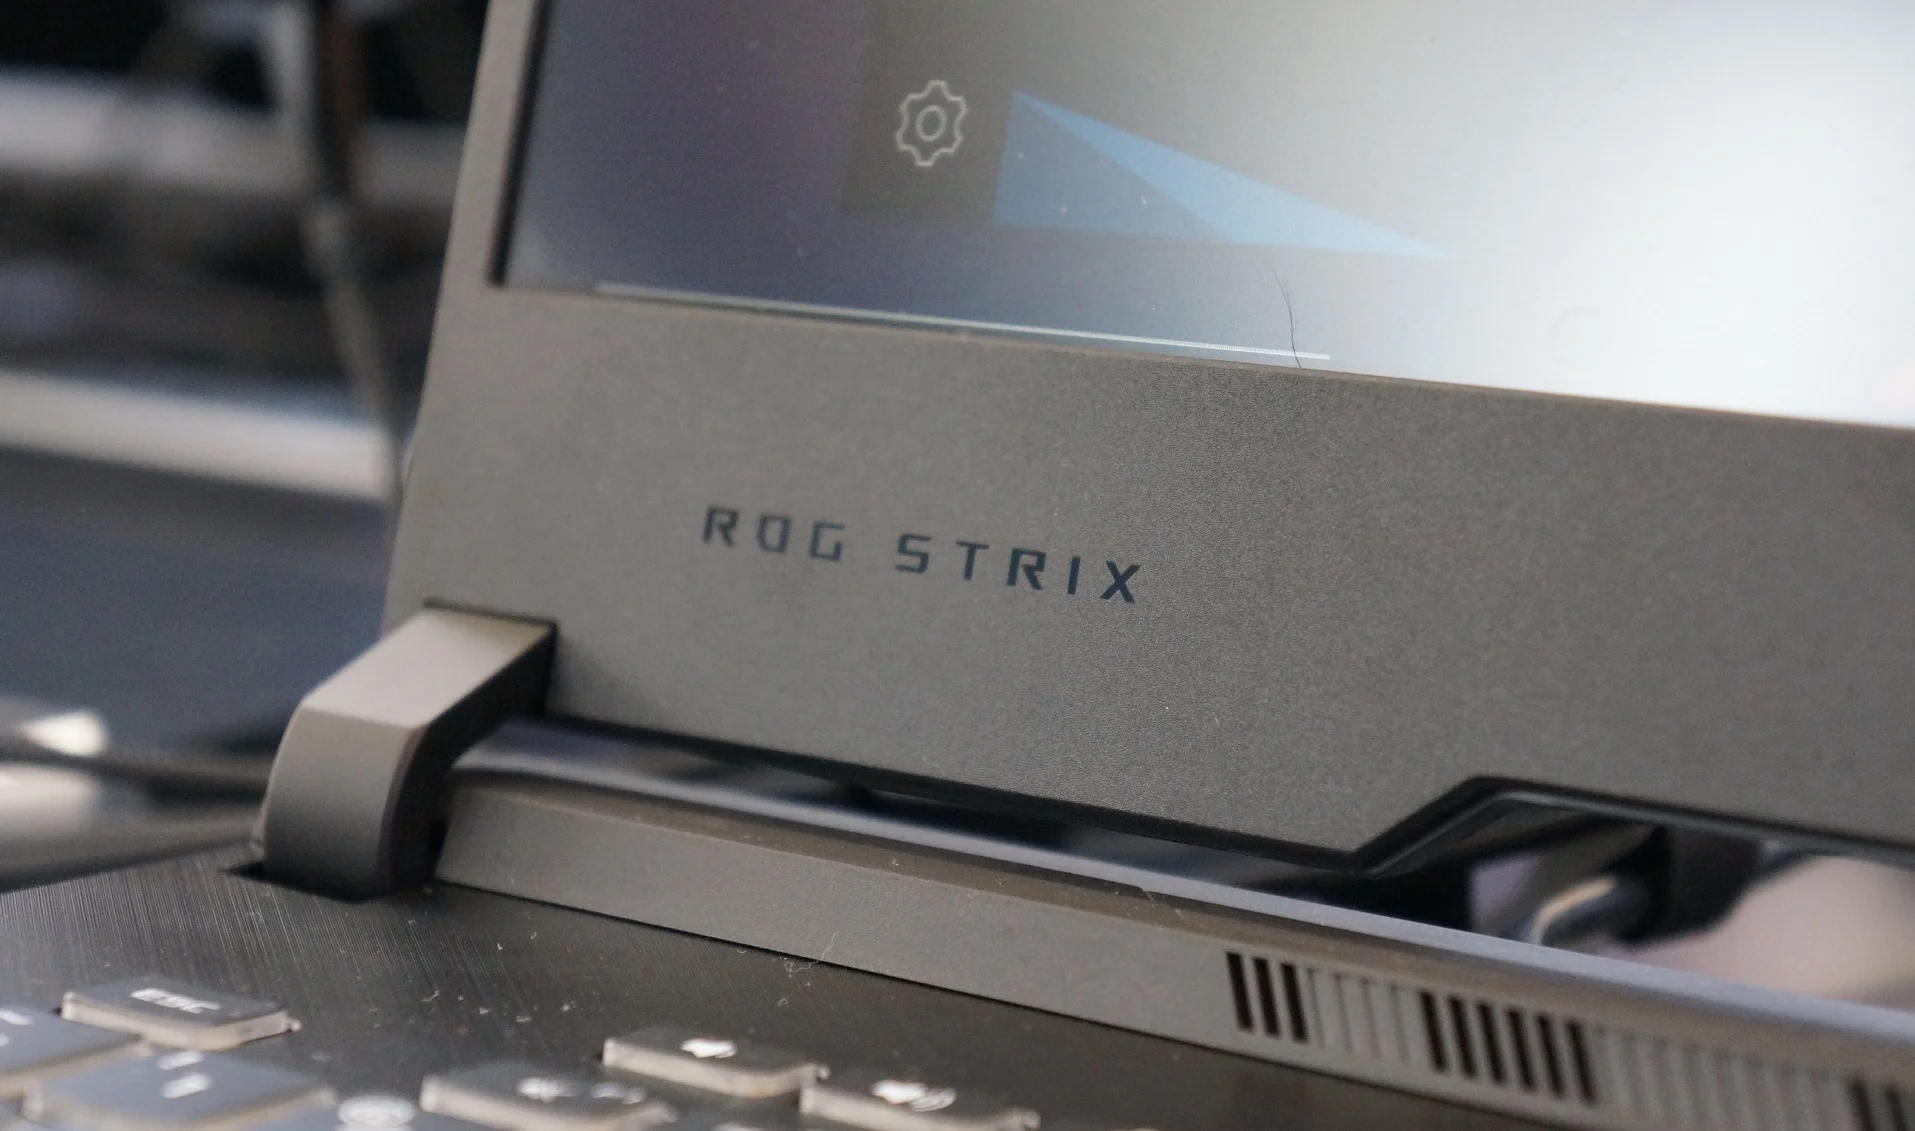 25 апреля компания Asus представила новые игровые ноутбуки серии Republic of Gamers, куда вошли модели ROG Zephyrus M и S, а также ROG Strix G и обновленные Hero III и Scar III. Кроме топовой серии видеокарт RTX, лэптопы оснащены свежими 1650 и 1660 Ti, а некоторые модели даже получили процессор Intel Core i9 девятого поколения. Мы побывали на презентации и расскажем о новинках более подробно.